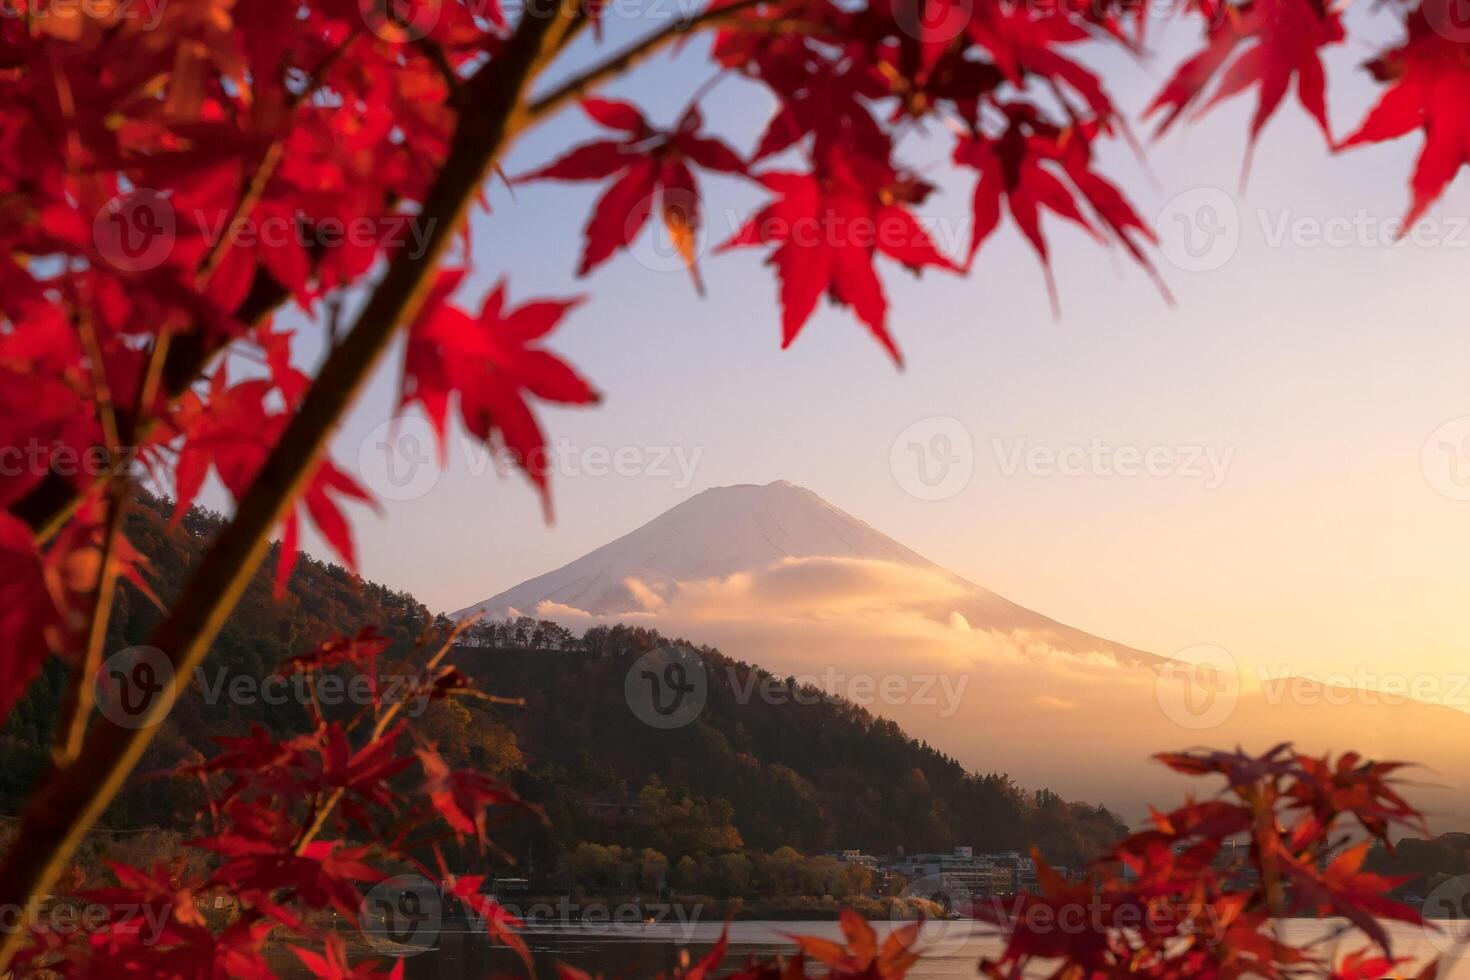 hermosa vista del paisaje natural del monte fuji en kawaguchiko durante la puesta de sol en la temporada de otoño en japón. El monte fuji es un lugar especial de belleza escénica y uno de los sitios históricos de Japón. foto